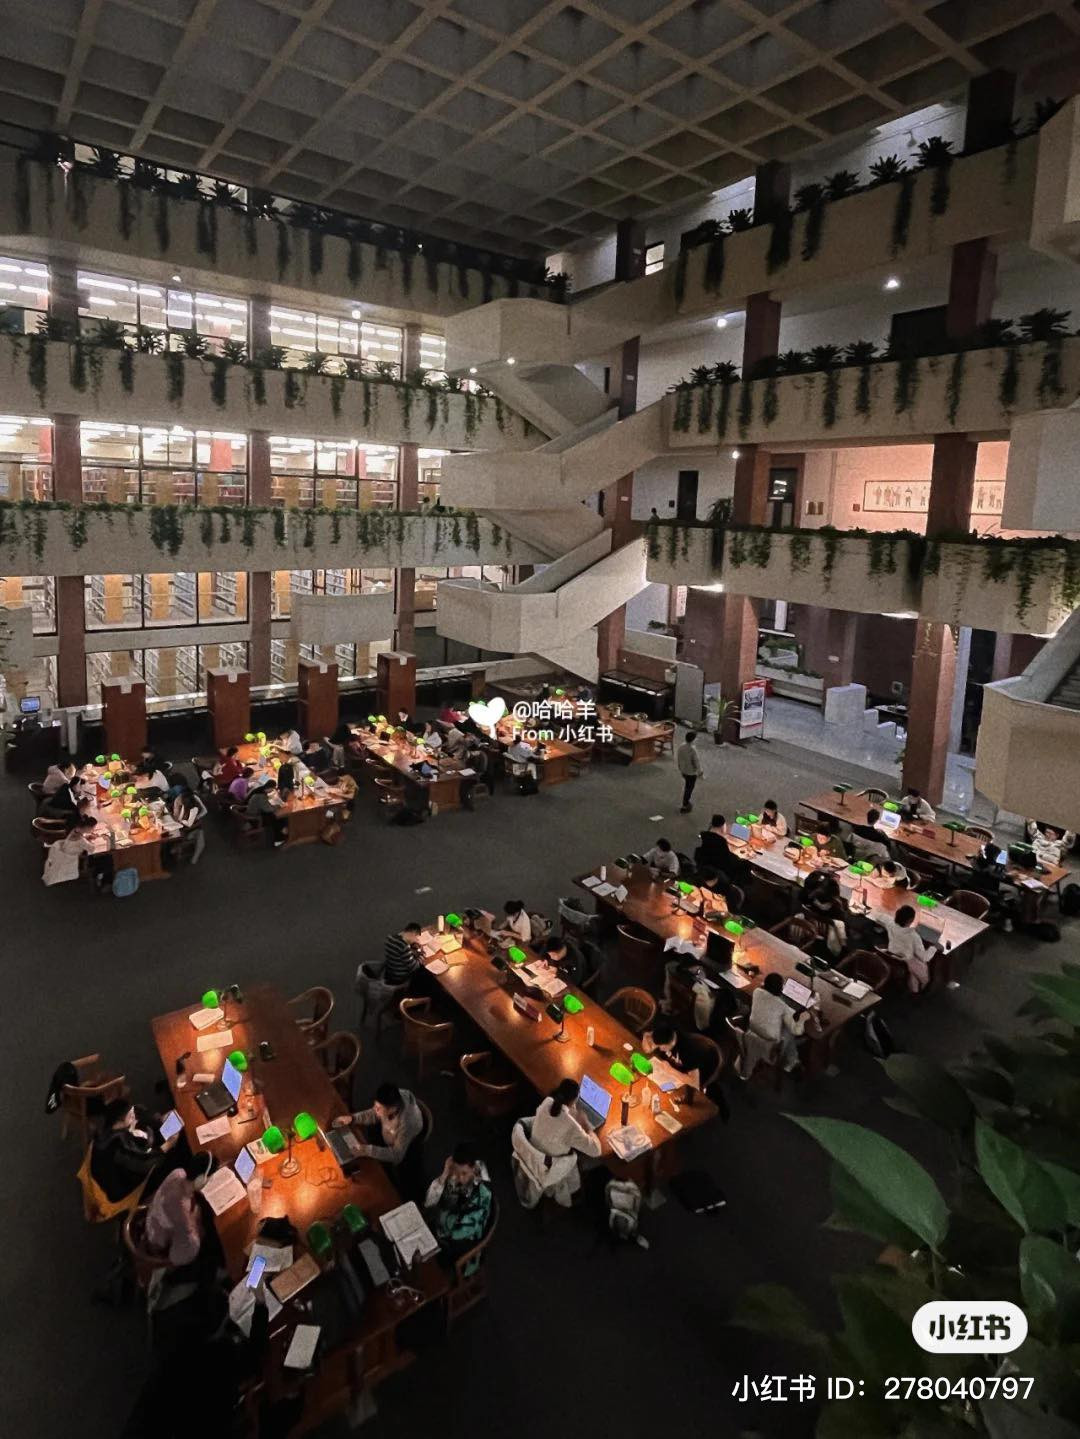 Thư viện ở Harvard châu Á 6h vẫn sáng đèn, sinh viên học xuyên đêm